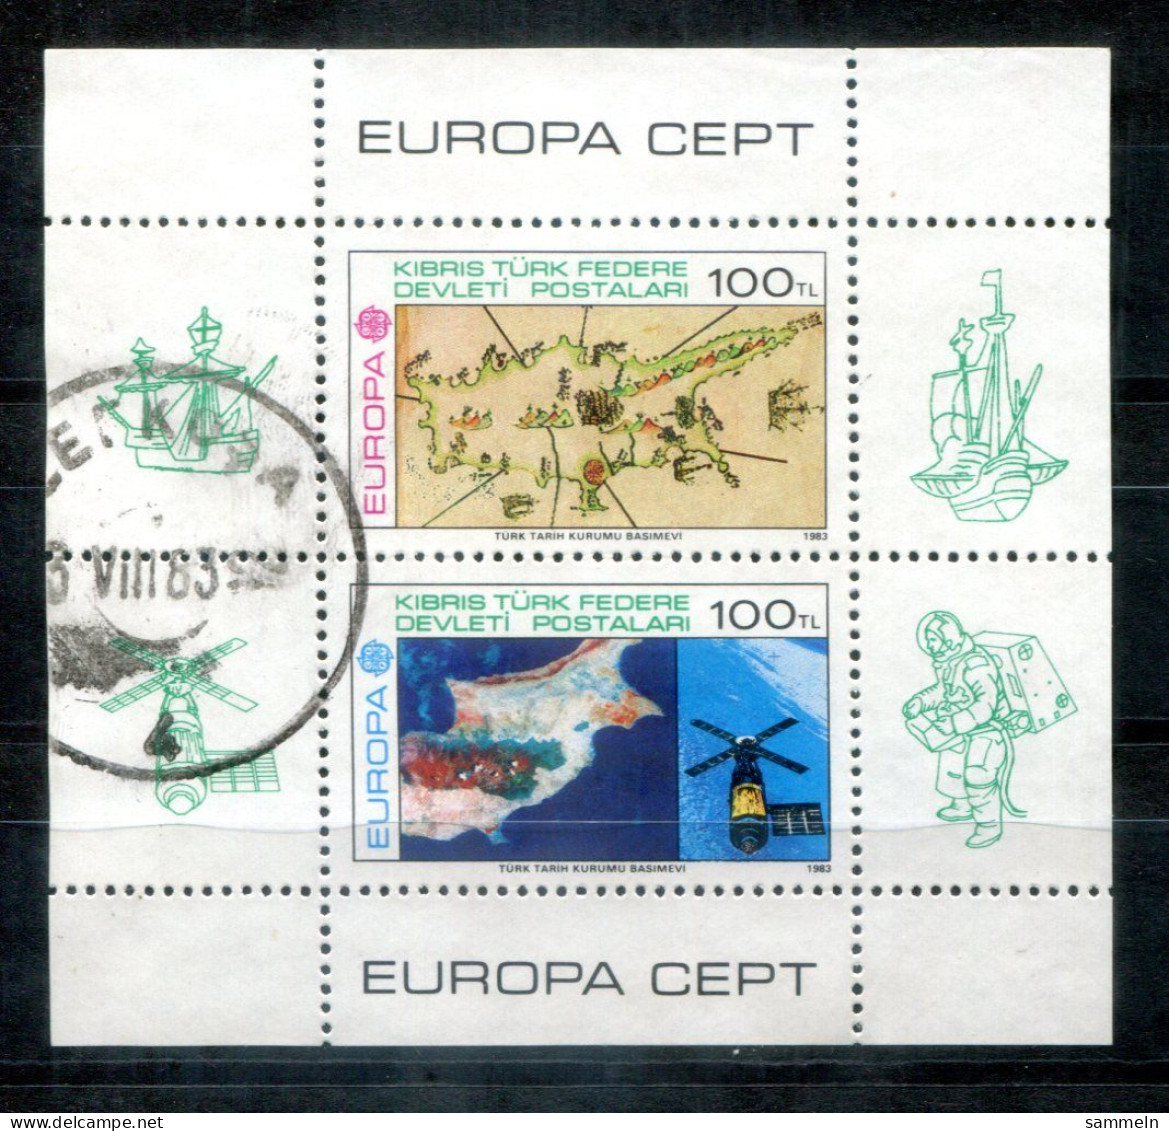 TÜRKISCH-ZYPERN Block 4, Bl.4 Canc. - Europa CEPT 19853, Weltraum. Space, Espace - TURKISH CYPRUS / CHYPRE TURQUE - Usati